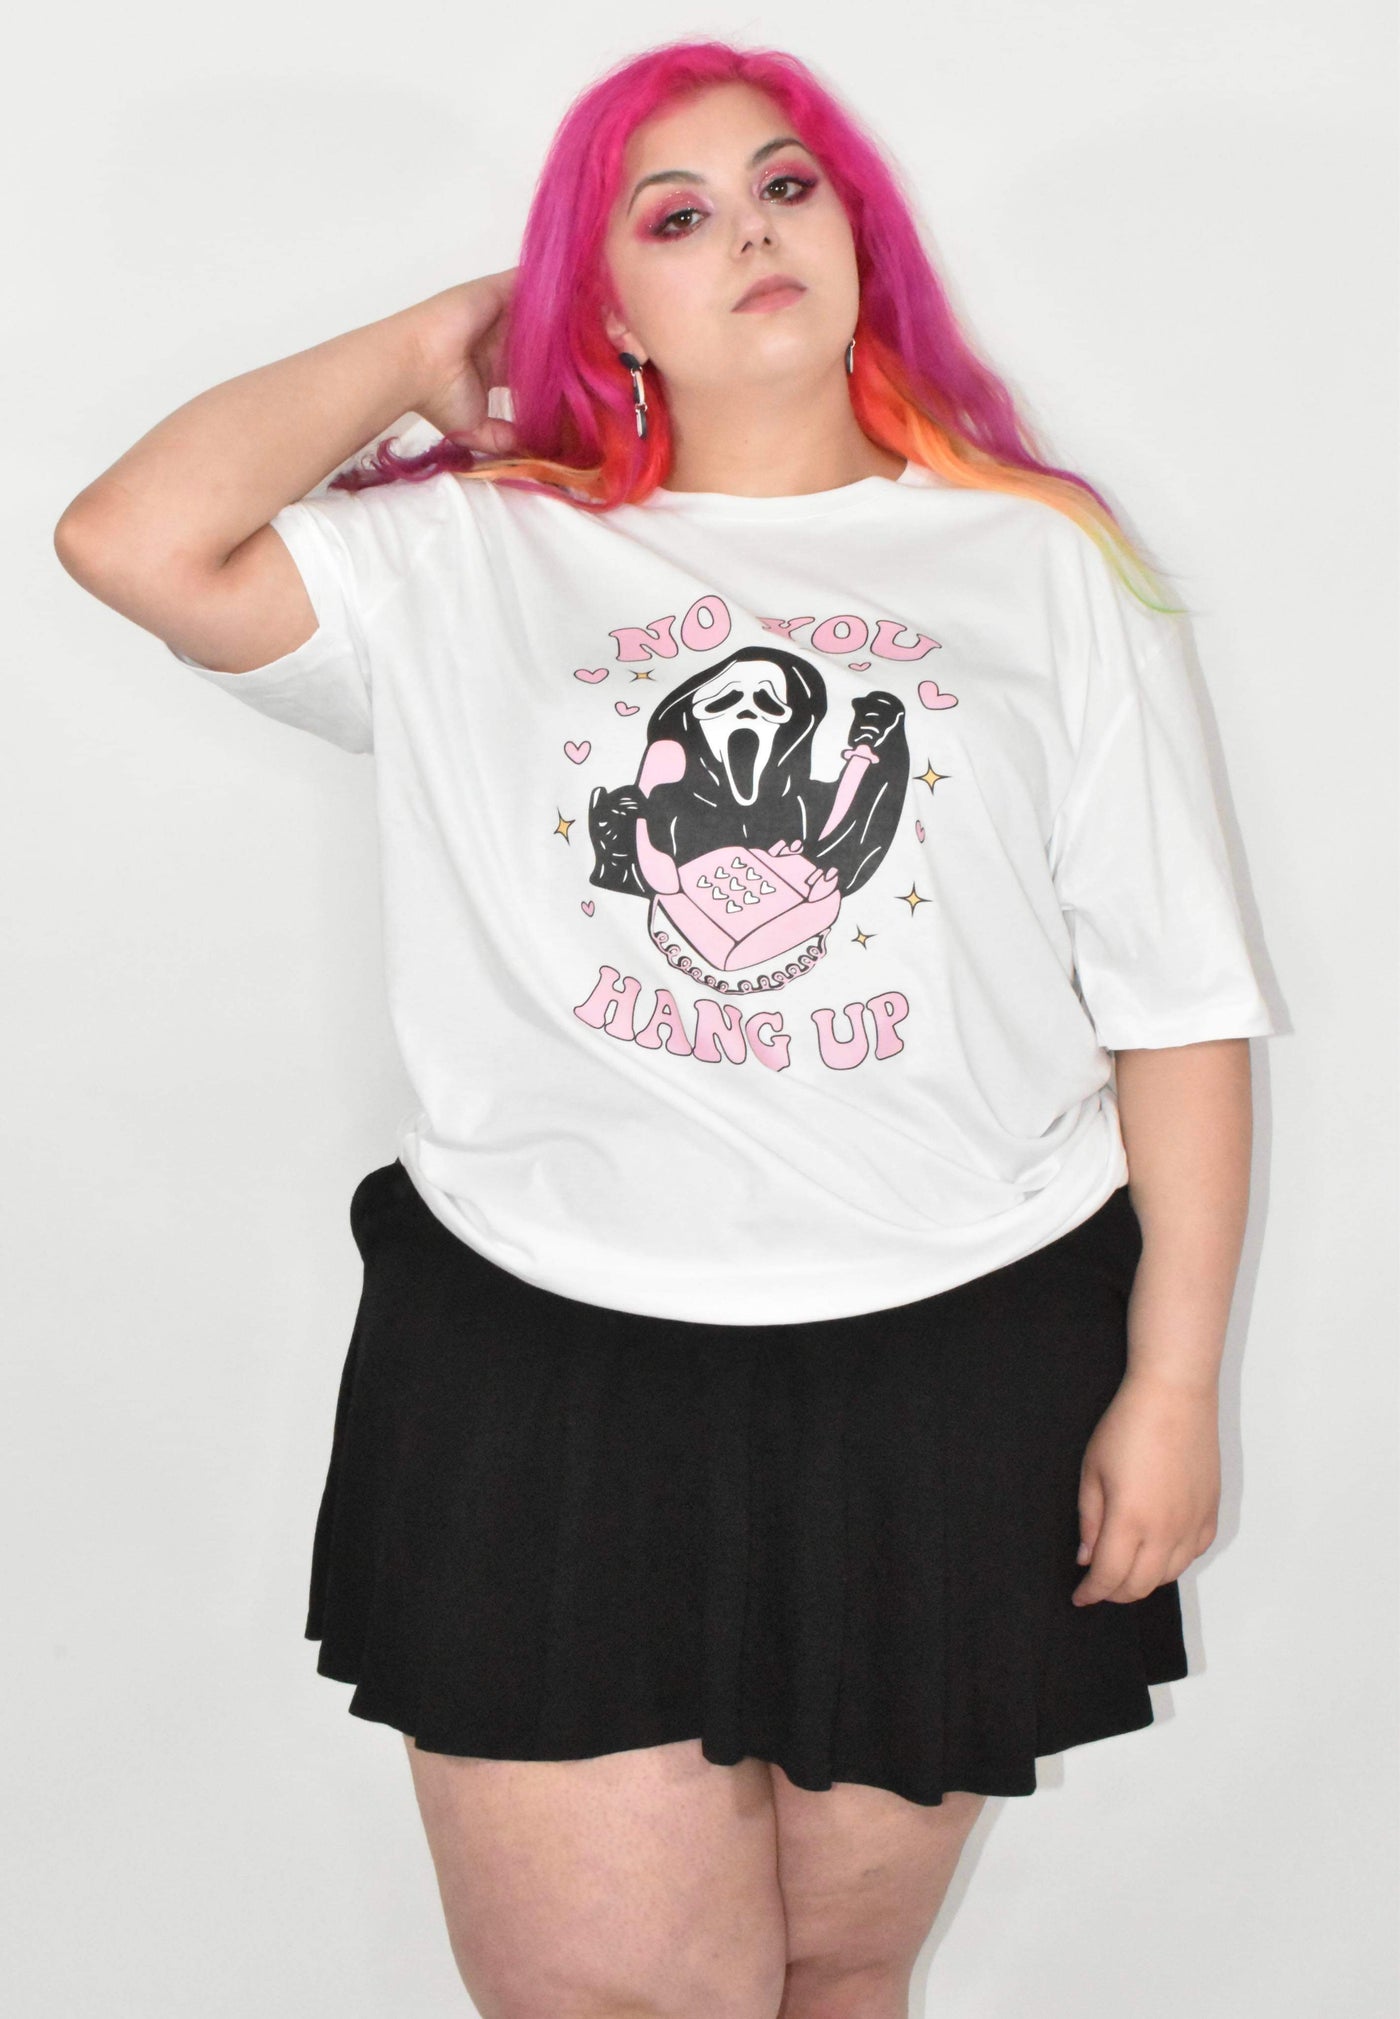 Scream "No You Hang Up" Unisex Organic T-Shirt